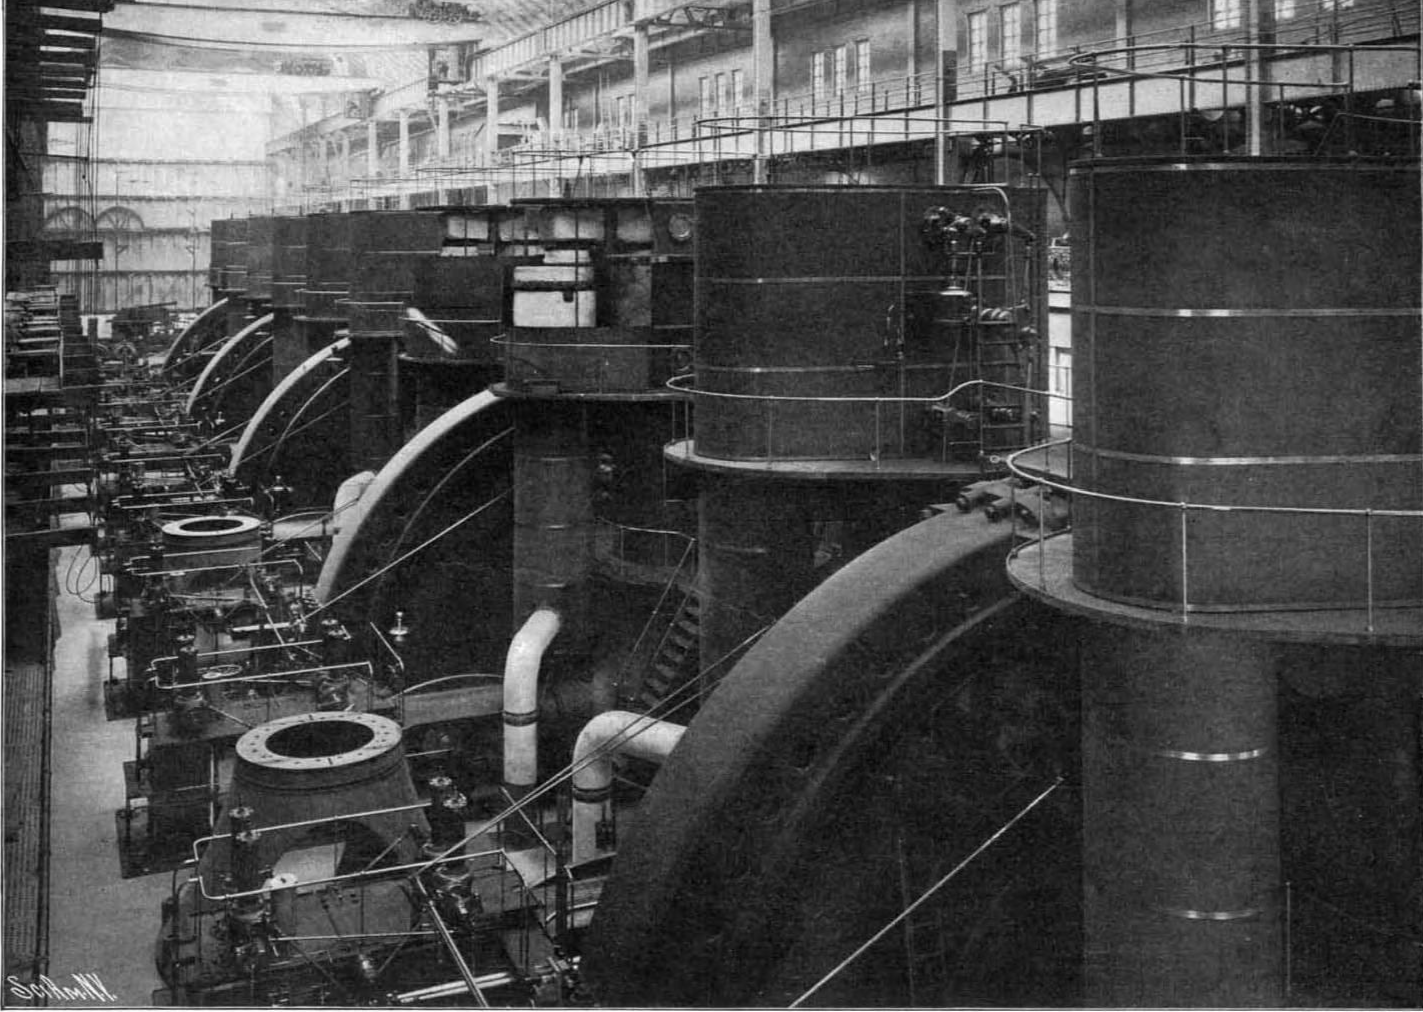 Внутренняя часть электростанции IRT с пятью установленными двигателями. Каждый двигатель состоит из двух башен, между которыми находится динамо-машина в форме диска. Из журнала Scientific American, 29 октября 1904 года.